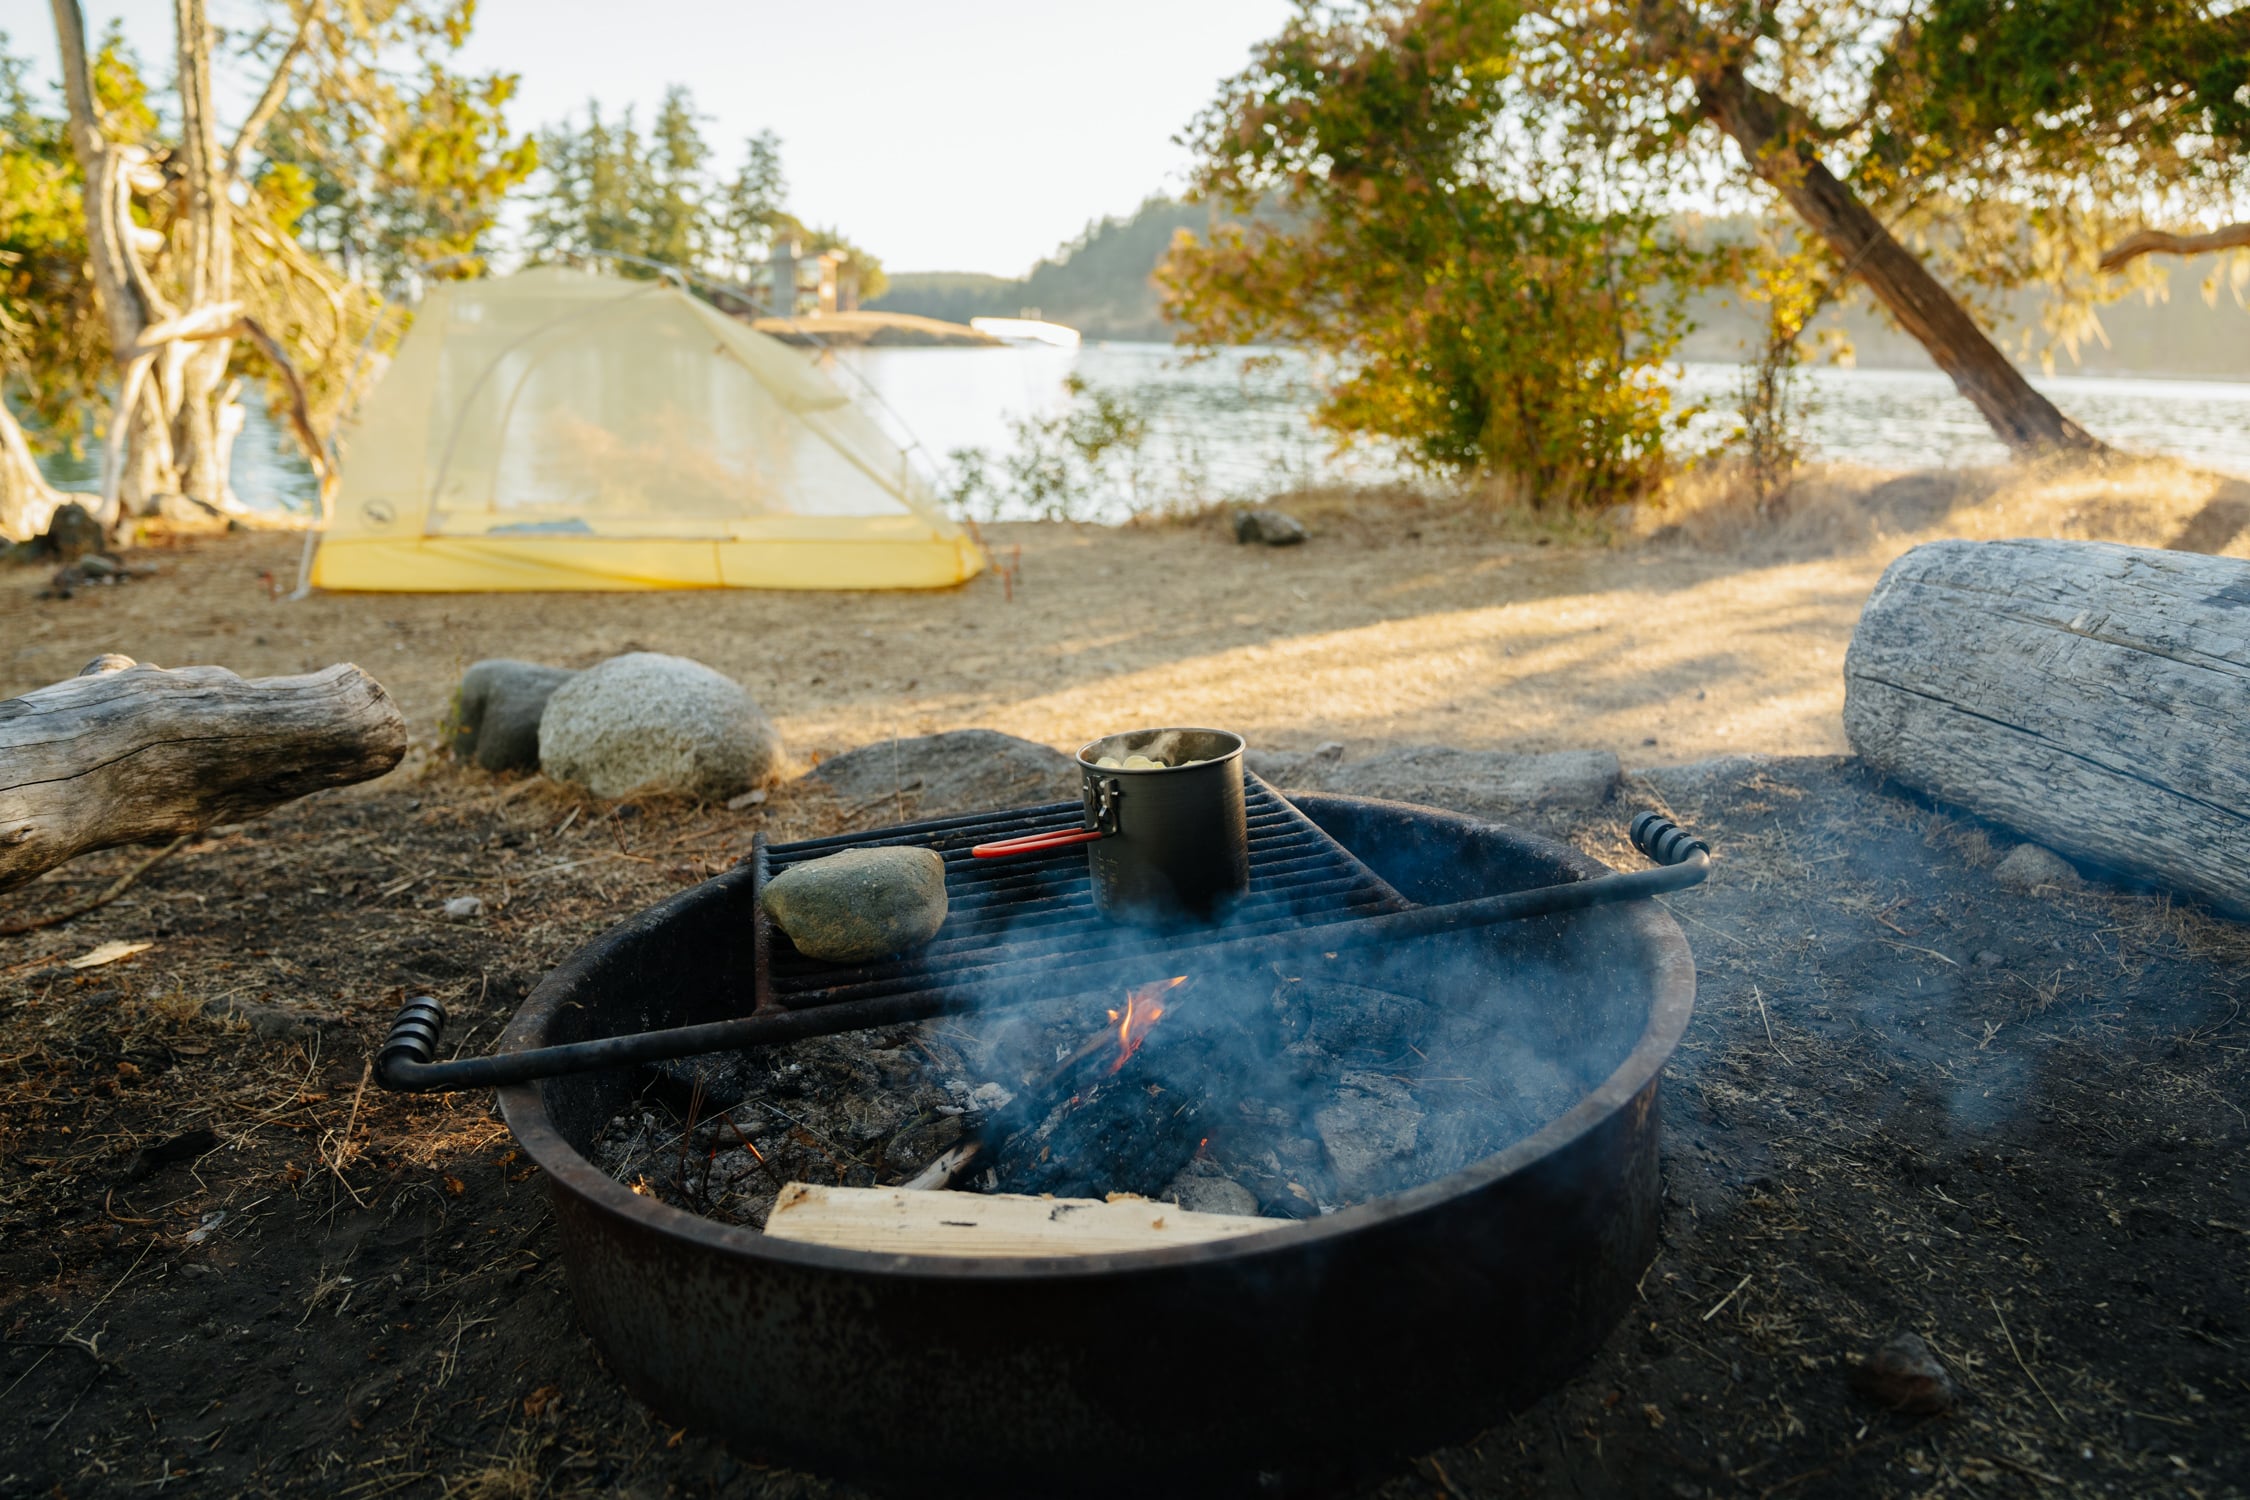 How to Kayak Camp on Posey Island, Washington